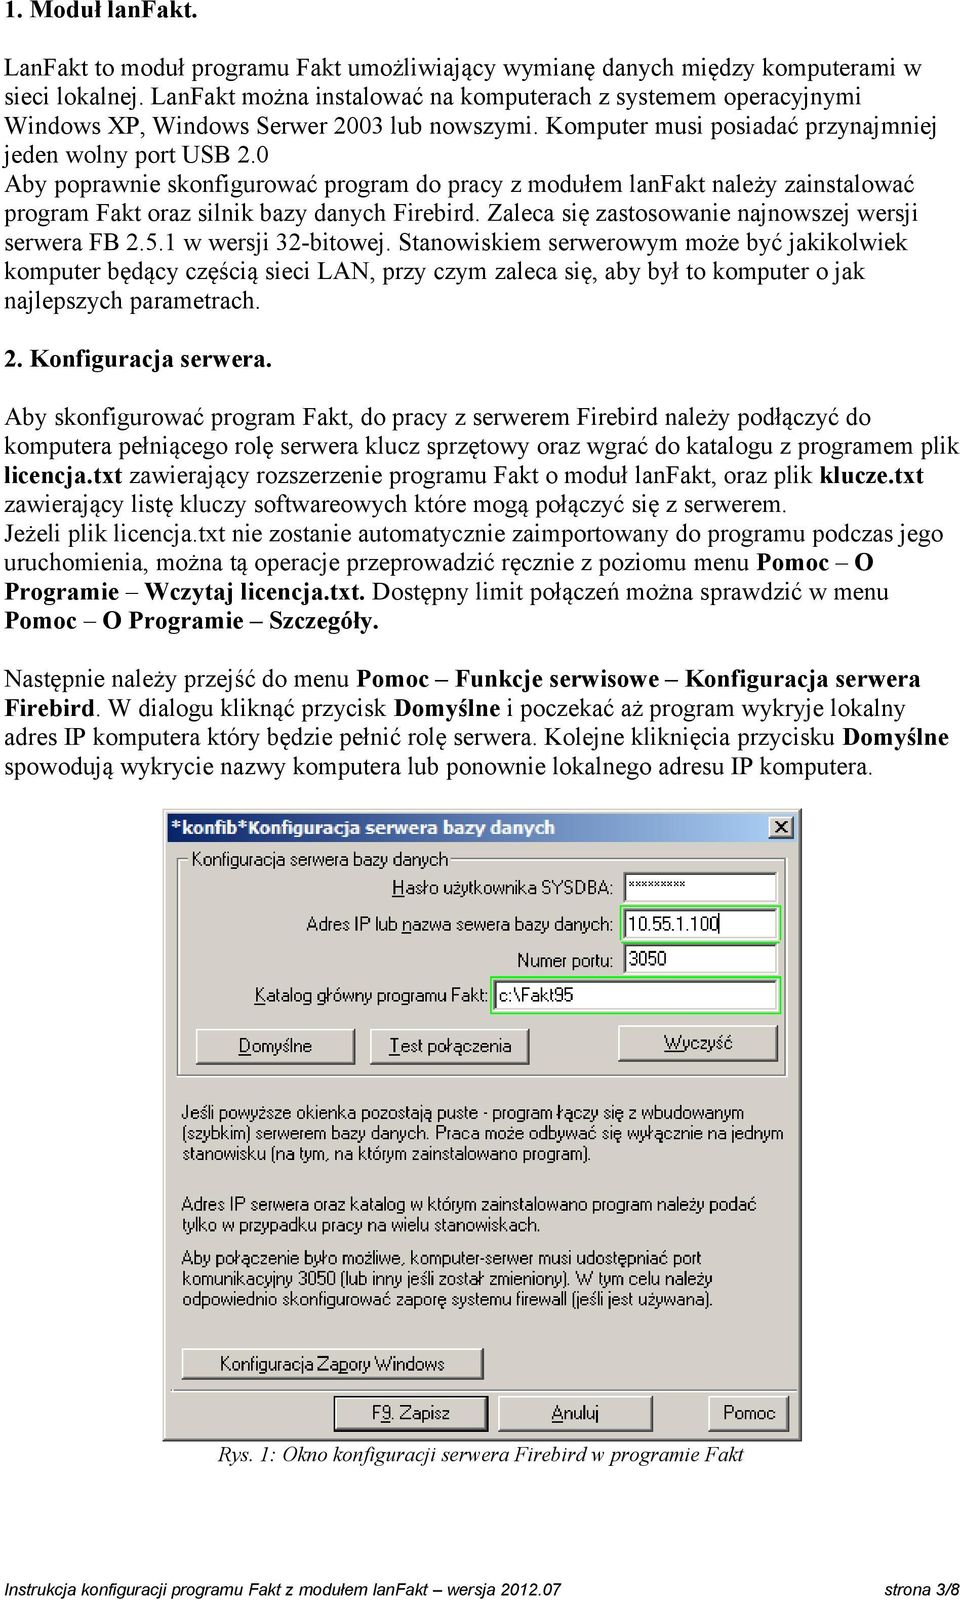 0 Aby poprawnie skonfigurować program do pracy z modułem lanfakt należy zainstalować program Fakt oraz silnik bazy danych Firebird. Zaleca się zastosowanie najnowszej wersji serwera FB 2.5.